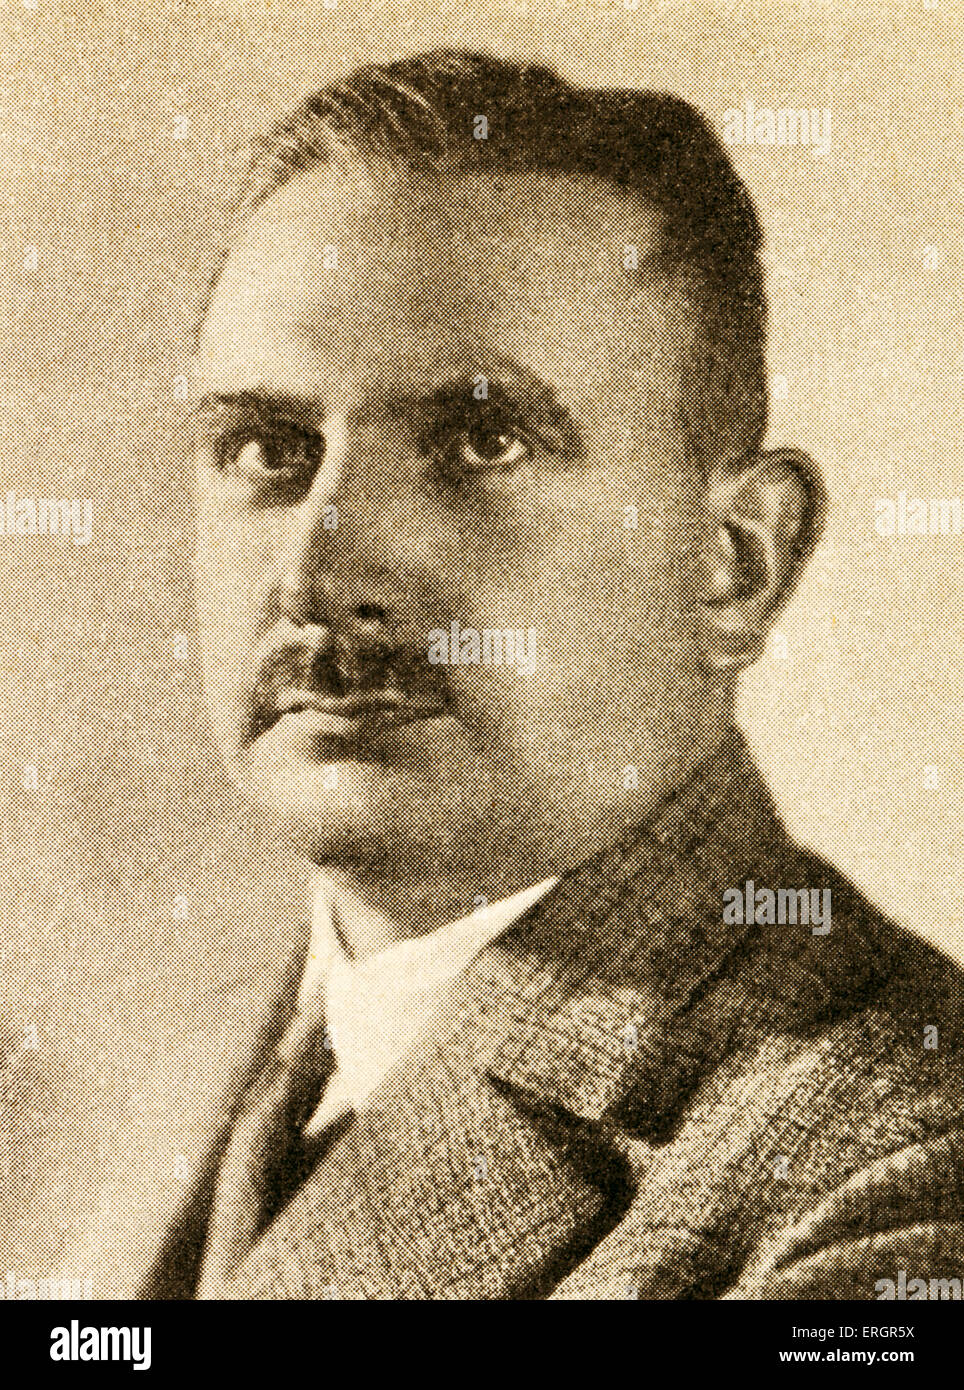 Bernhard Rust, Porträt c. 1933. Minister für Wissenschaft, Bildung und Kultur (Reichserziehungsminister) in Nazi-Deutschland, 30 September 1883-8 Mai 1945. Stockfoto